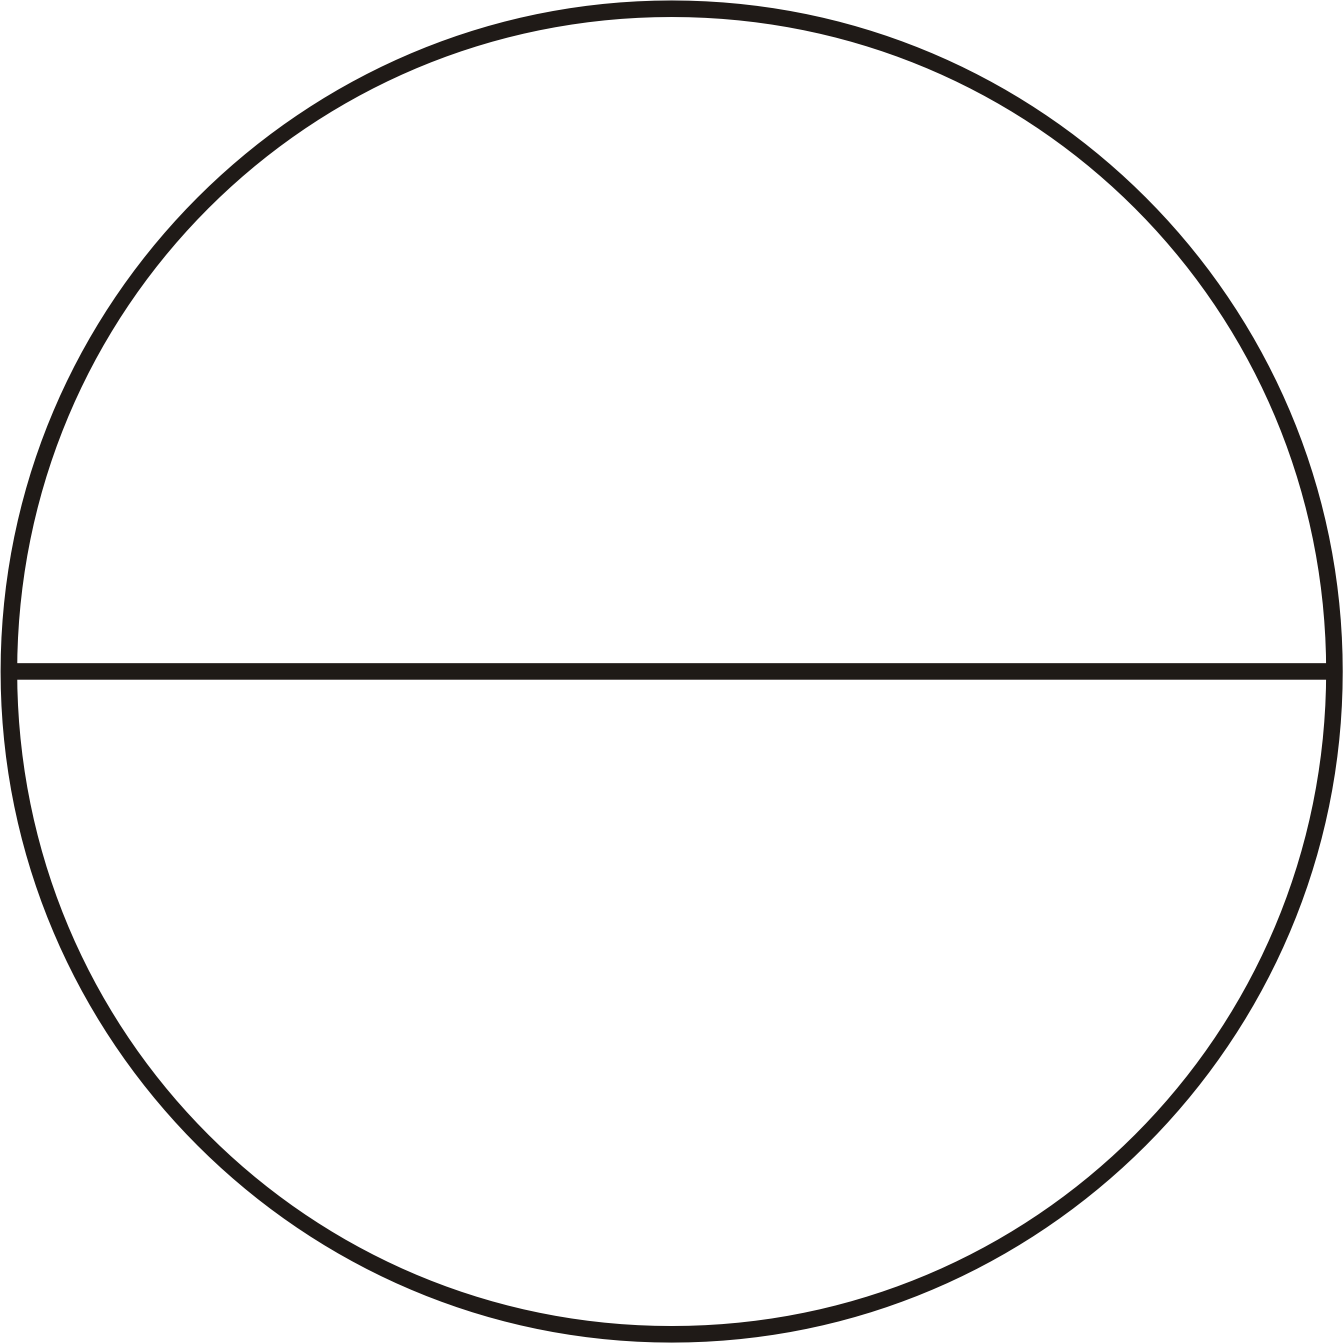 Круг разделенный на 2 части. Круг поделенный на 2 части. Круг поделенный на 4 части. Rhgeu gjltktysq YF 4 xfcnb. Круг разделенный на части.